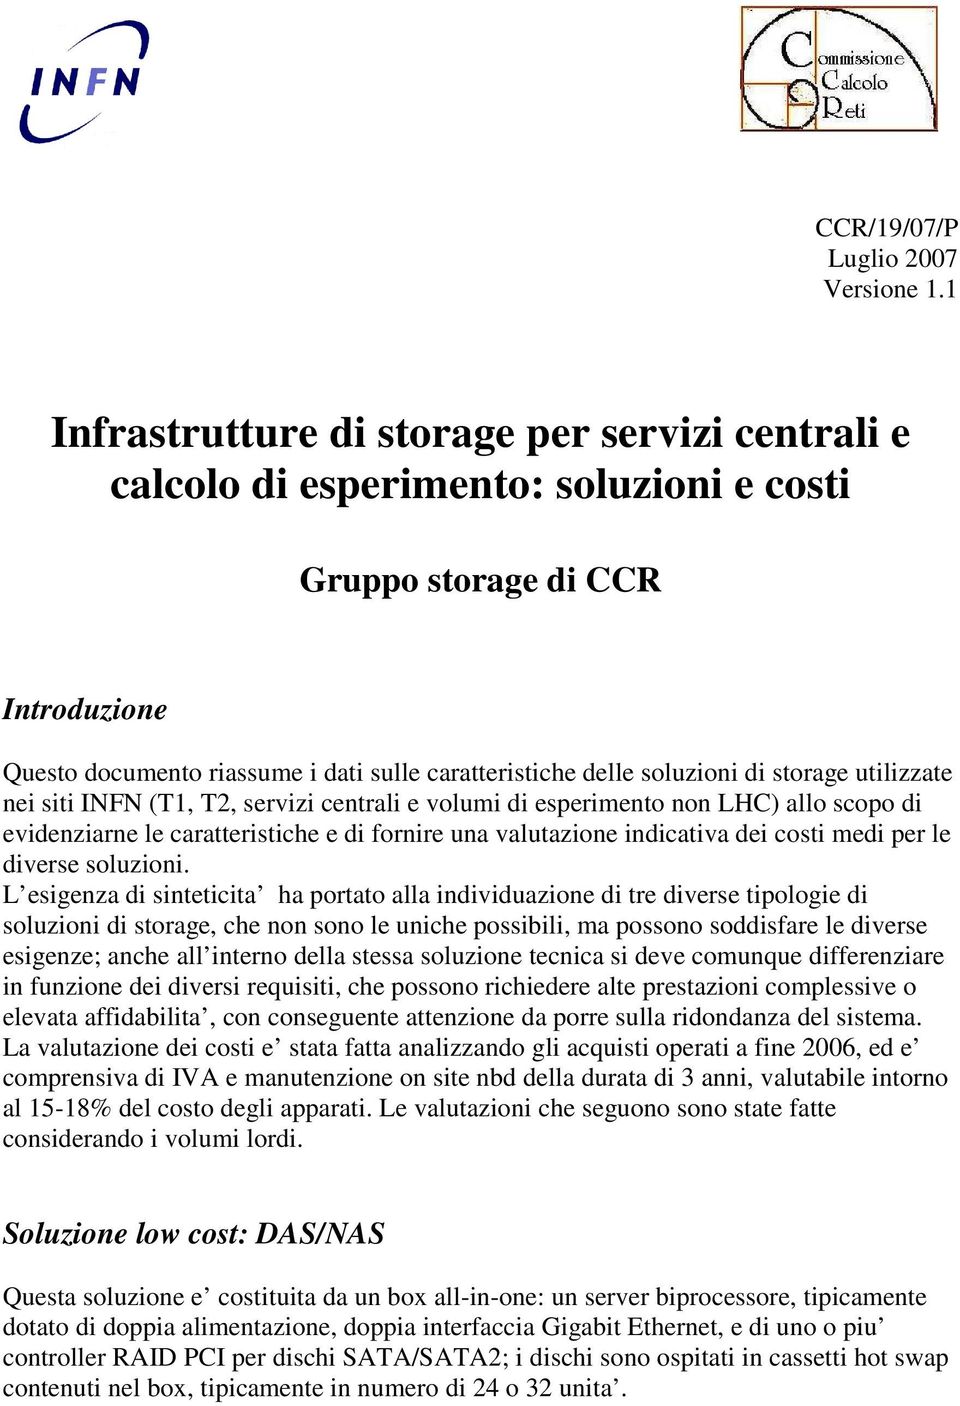 di storage utilizzate nei siti INFN (T1, T2, servizi centrali e volumi di esperimento non LHC) allo scopo di evidenziarne le caratteristiche e di fornire una valutazione indicativa dei costi medi per